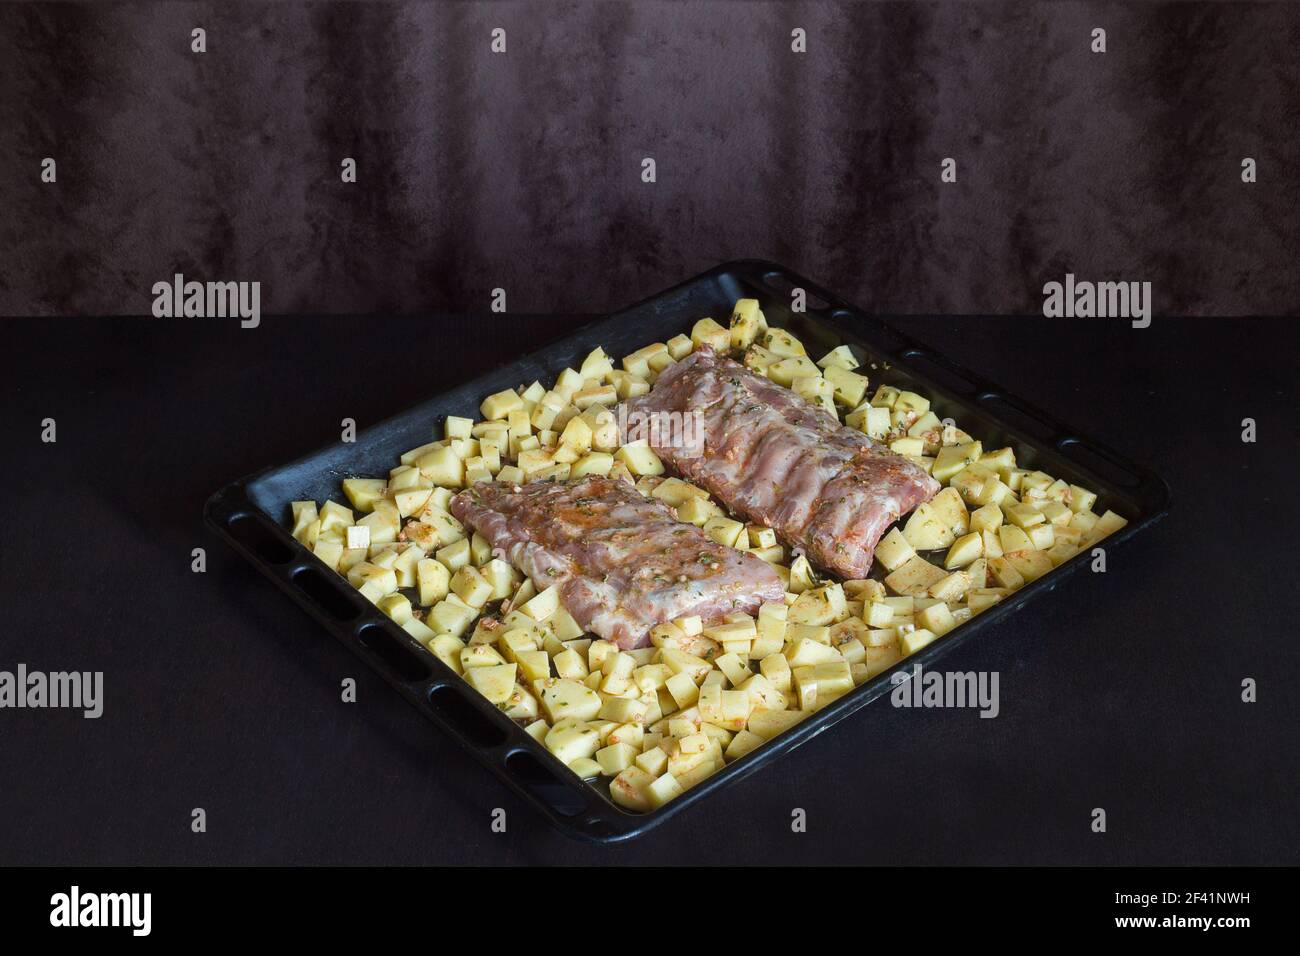 Deux bandes de côtes de porc fraîches entourées de pommes de terre sur une plaque de cuisson. Plats frais et viandes crues sur une table en bois. Banque D'Images